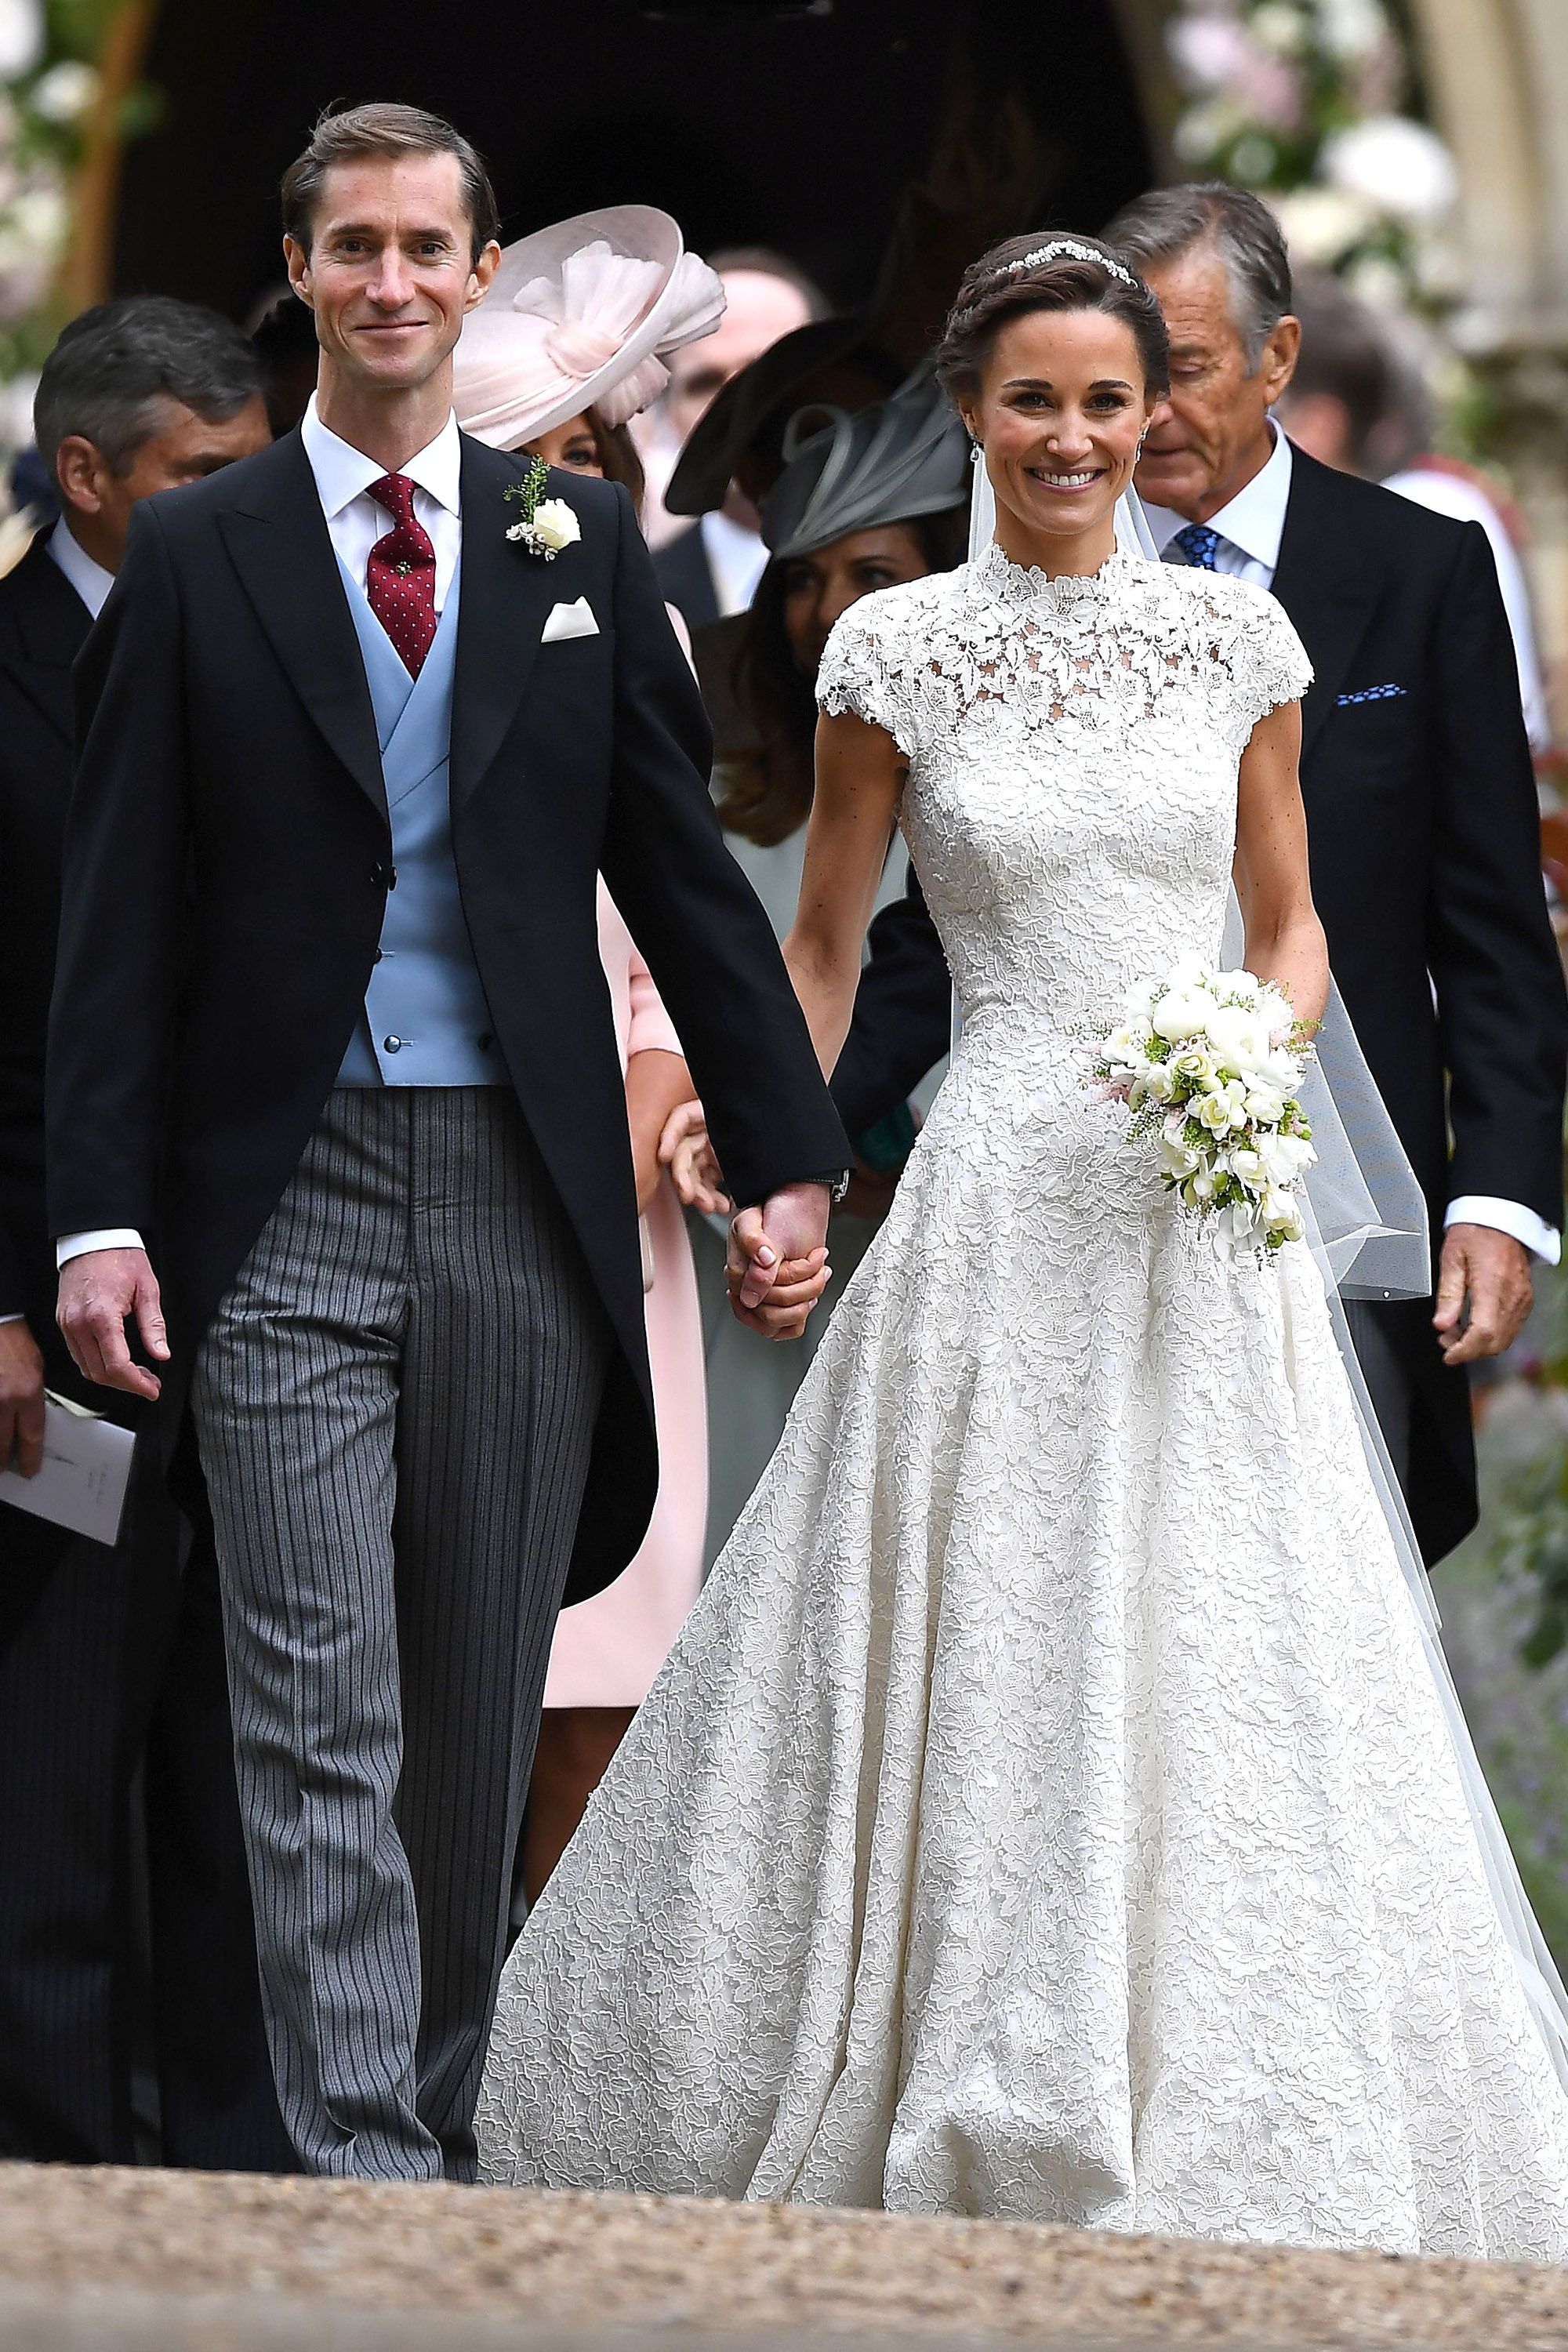 Middleton Wedding Photos - Kate Middleton and Pippa Middleton Wedding Pictures